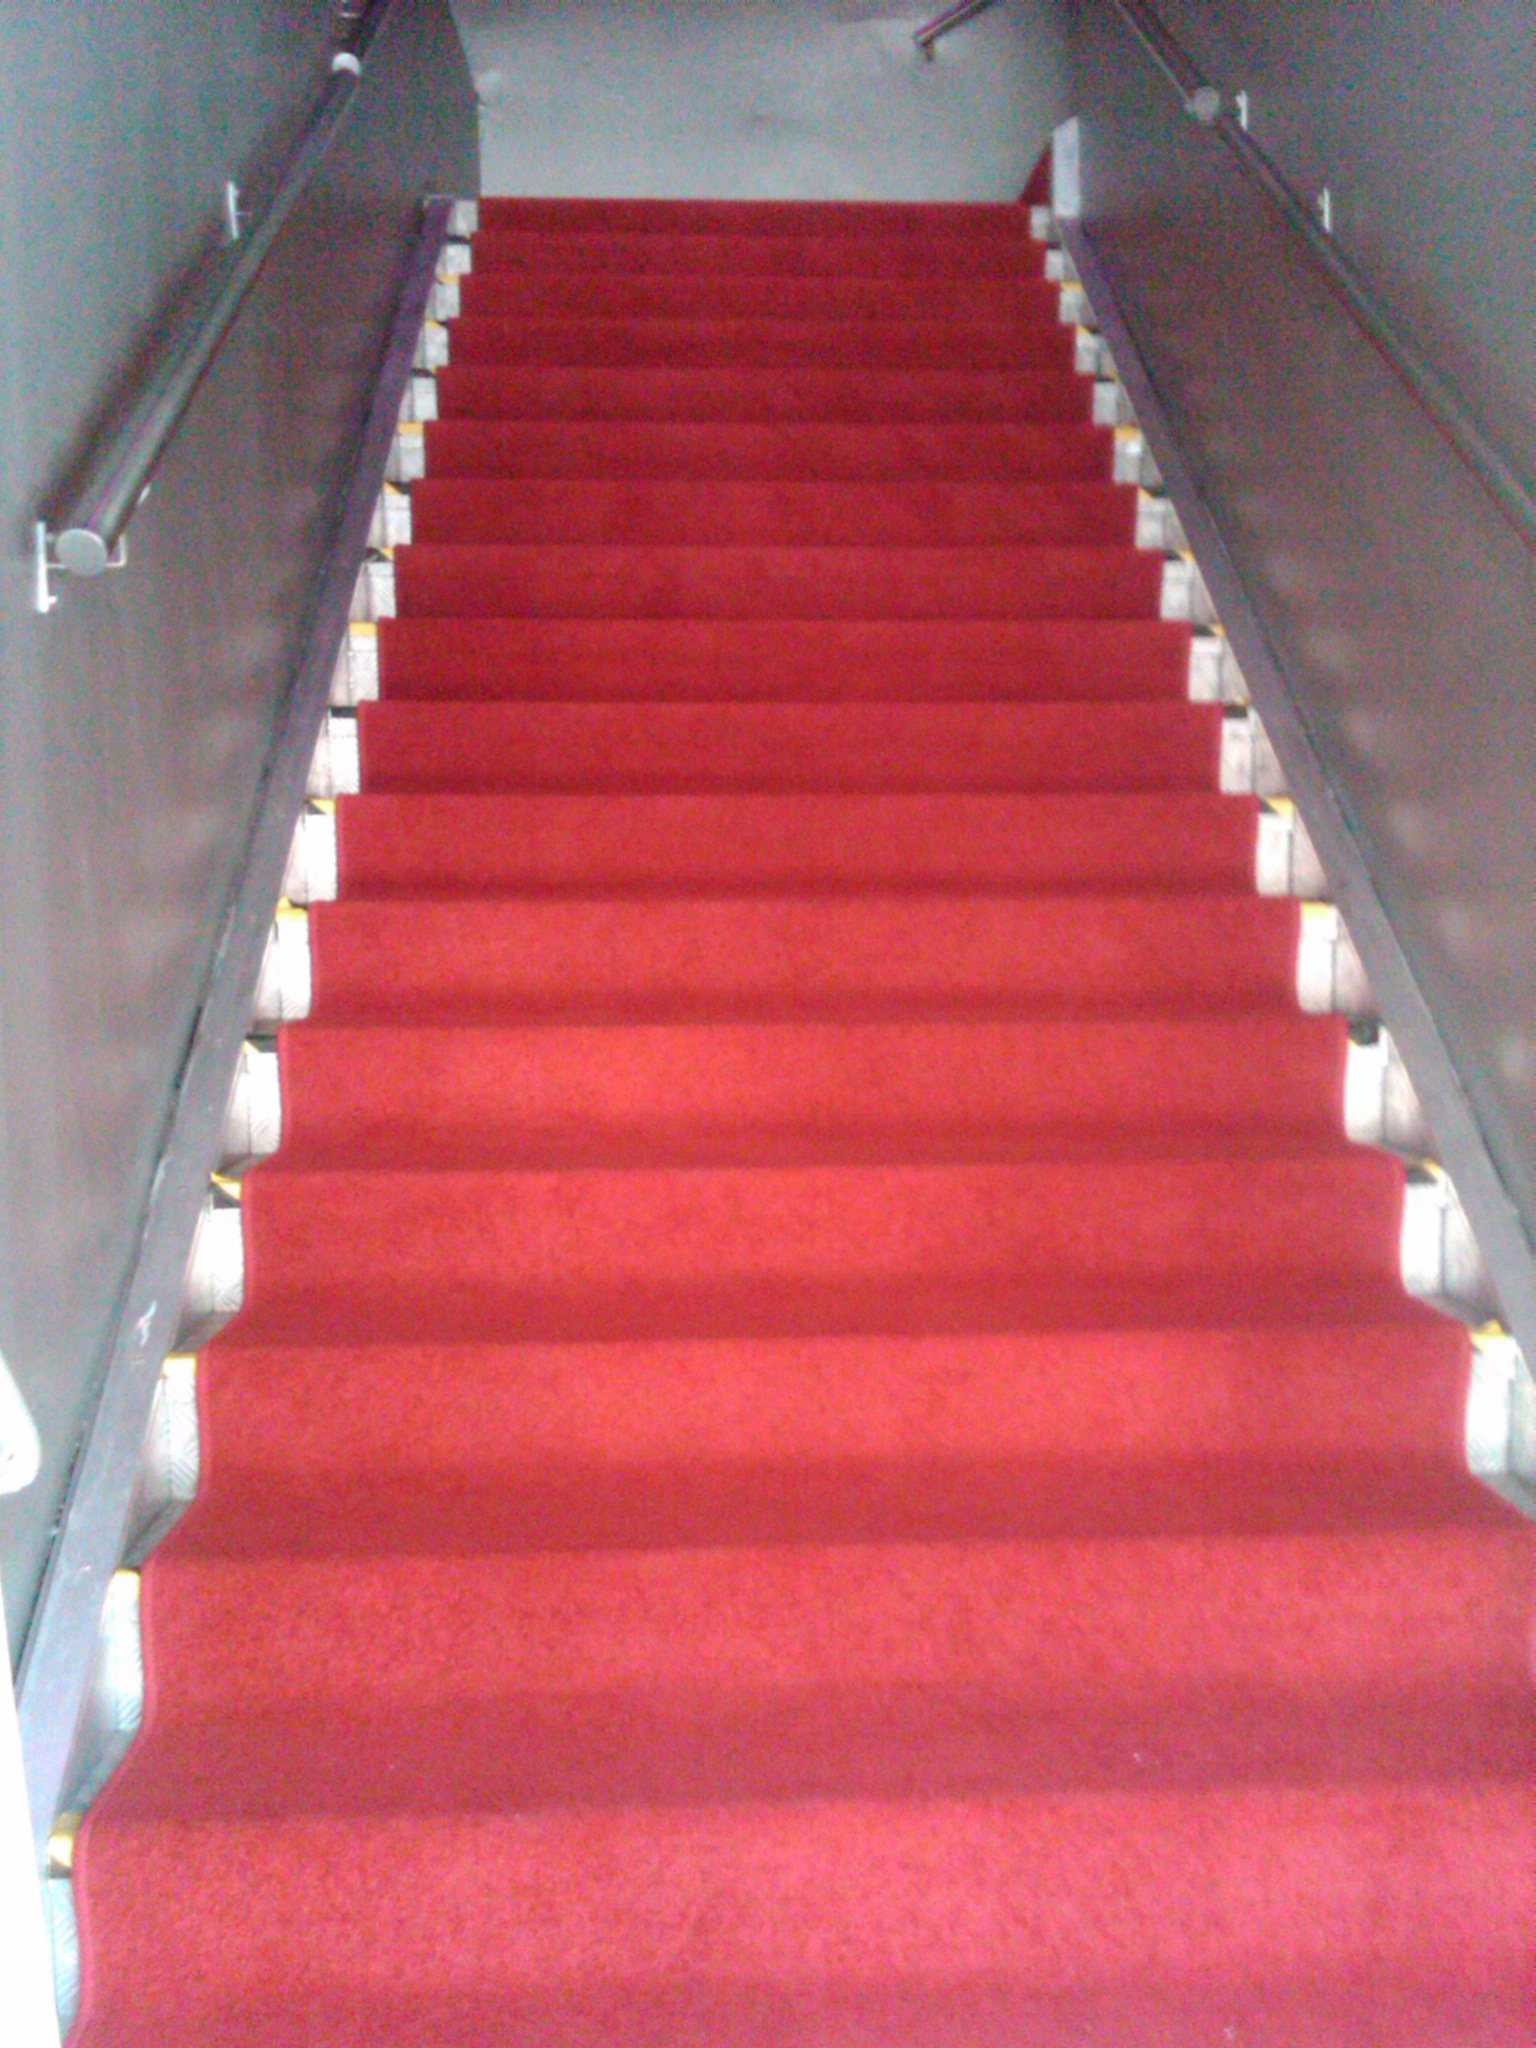 Red Carpet Stair Runner